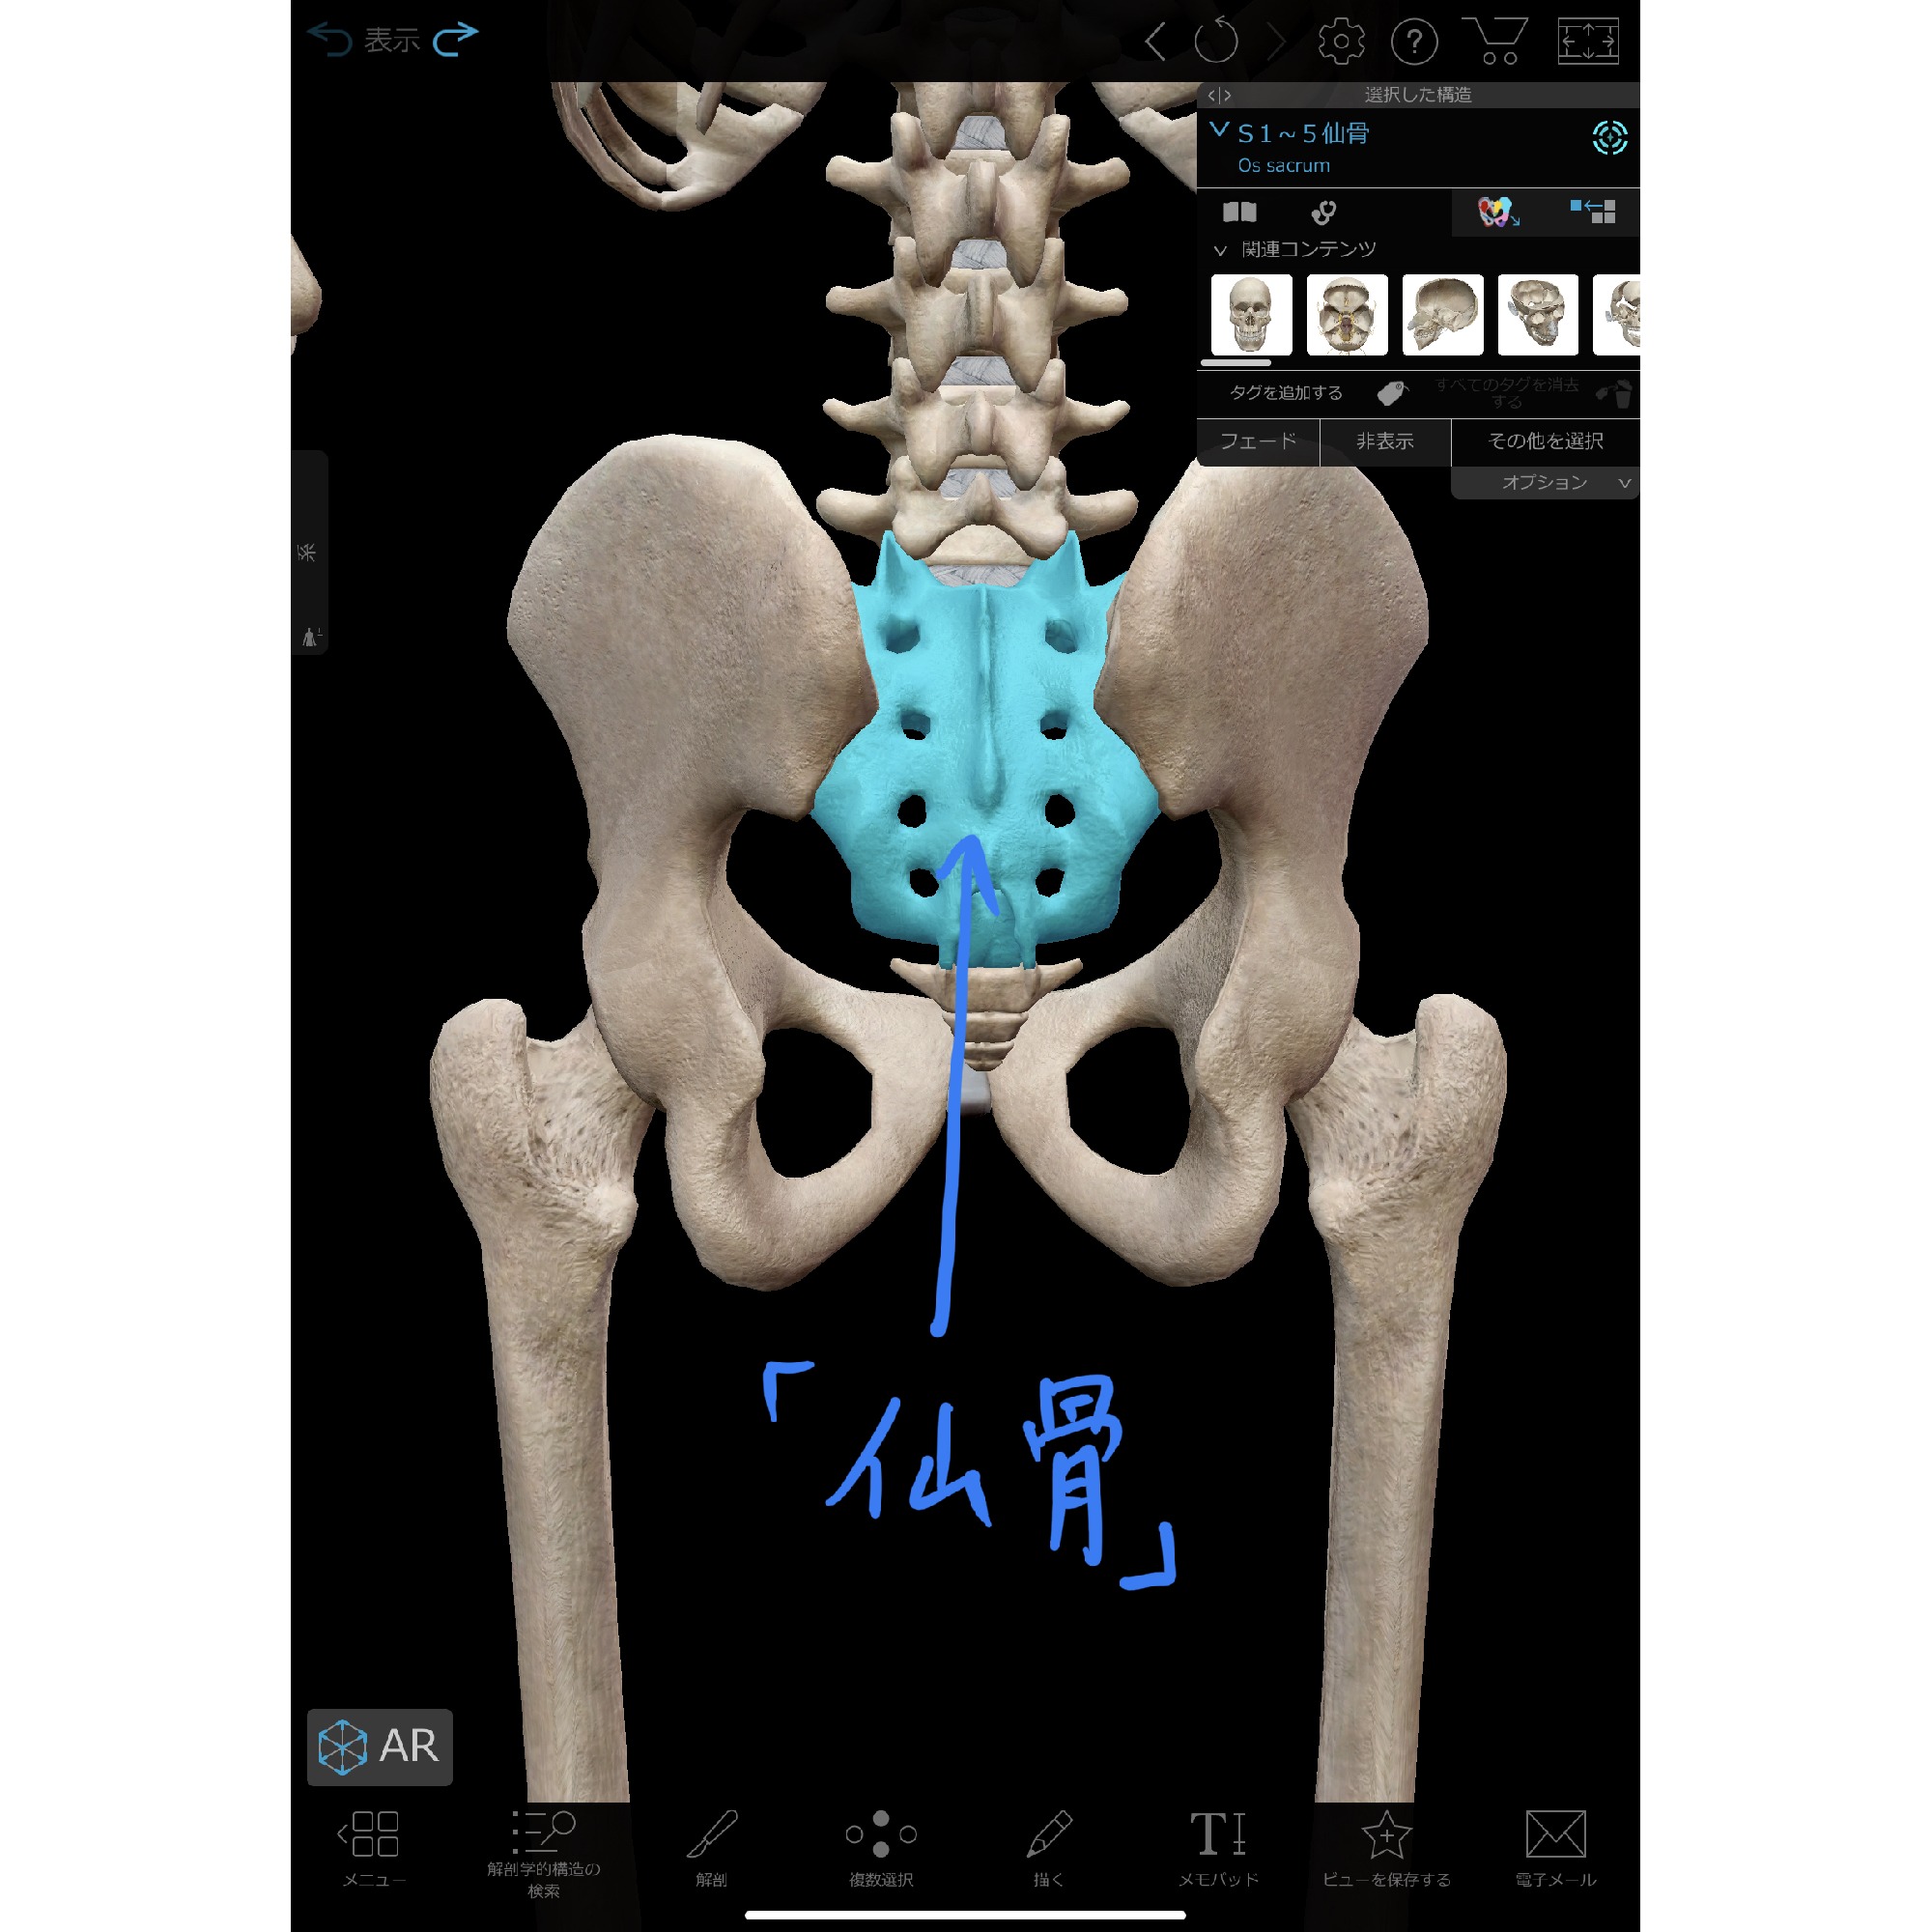 仙骨の動きを改善し 腰痛を緩和する方法 理学療法士 安部元隆 マイベストプロ大分